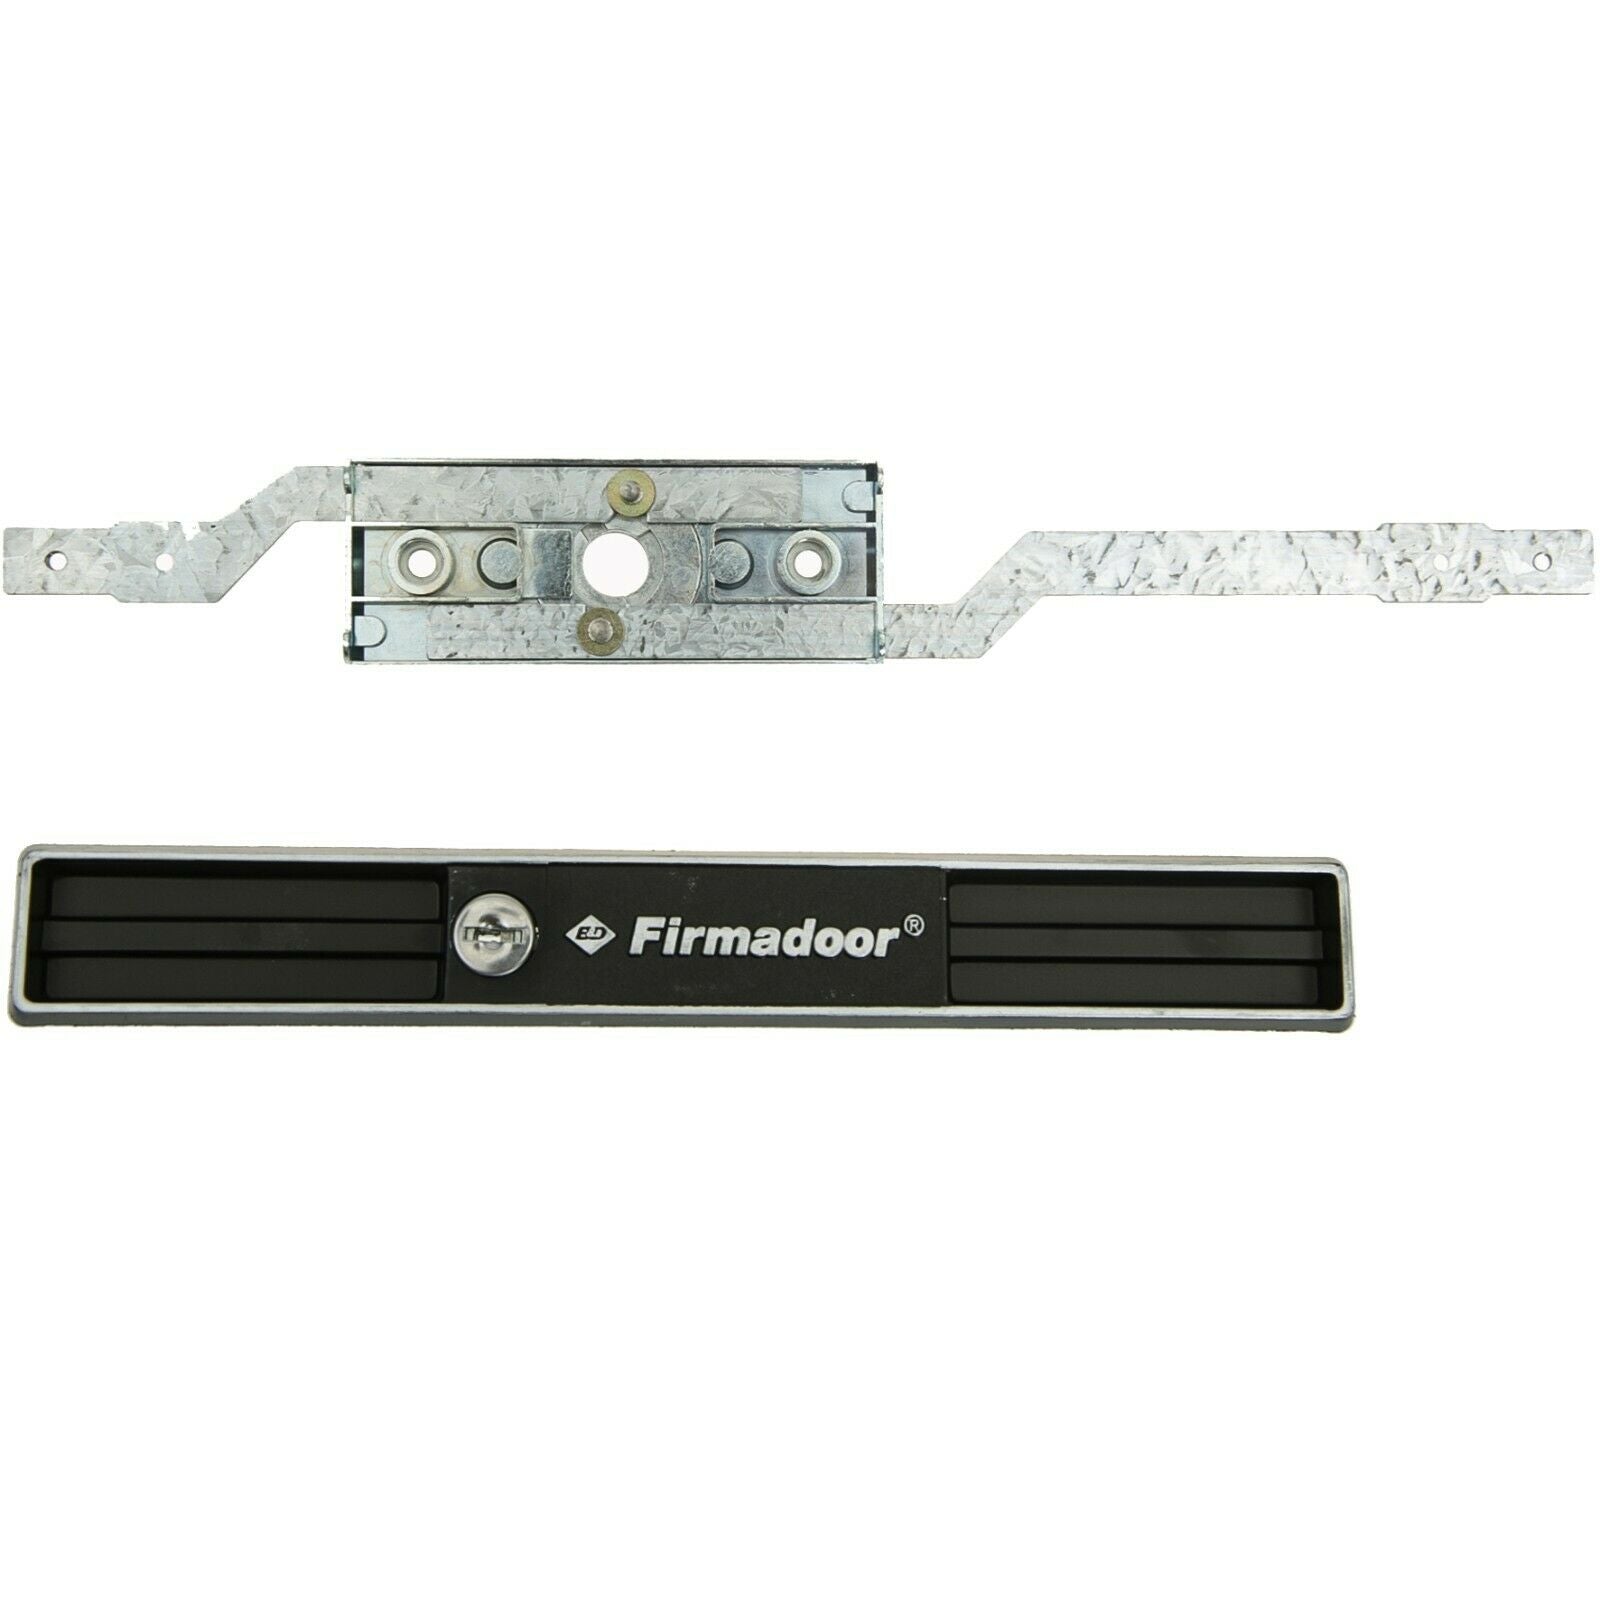 Firmadoor Garage Roller Door Lock Faceplate & Keys